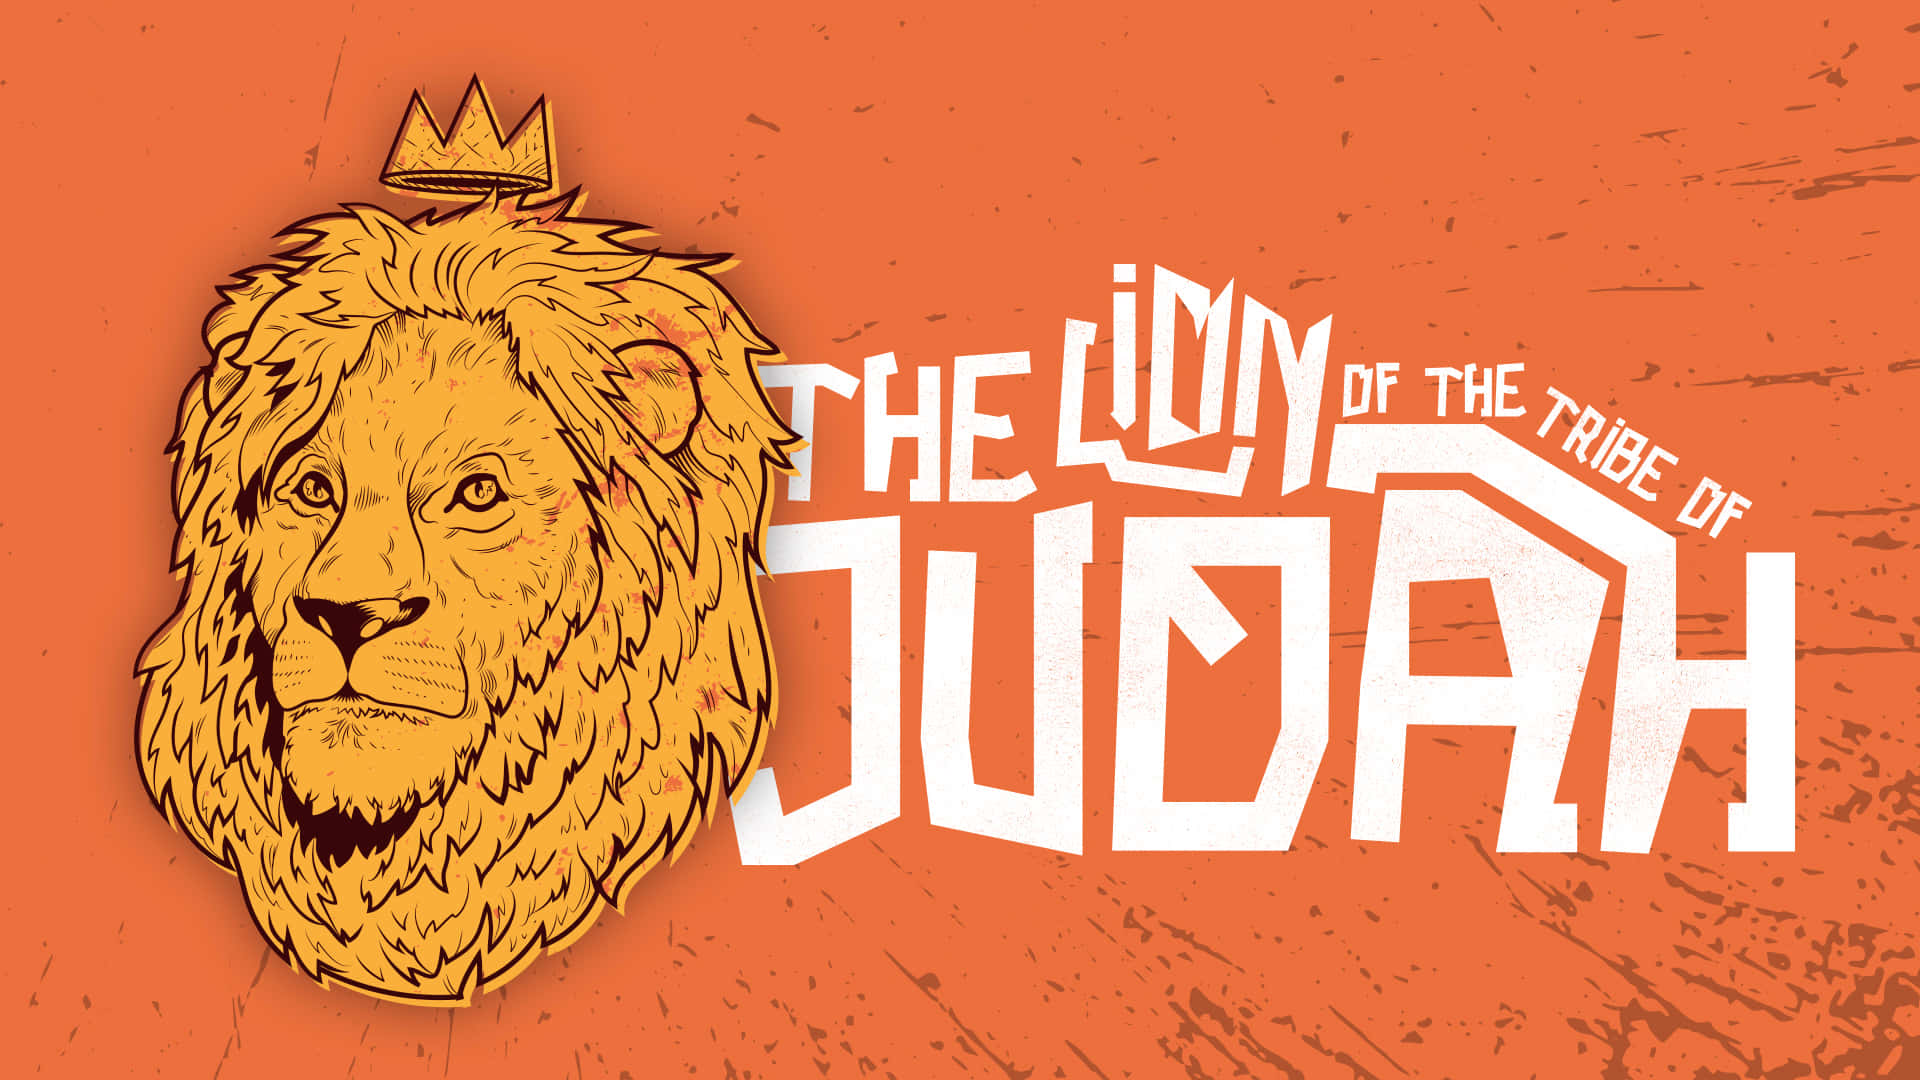 Løven af Judas symboliserer magt og styrke.